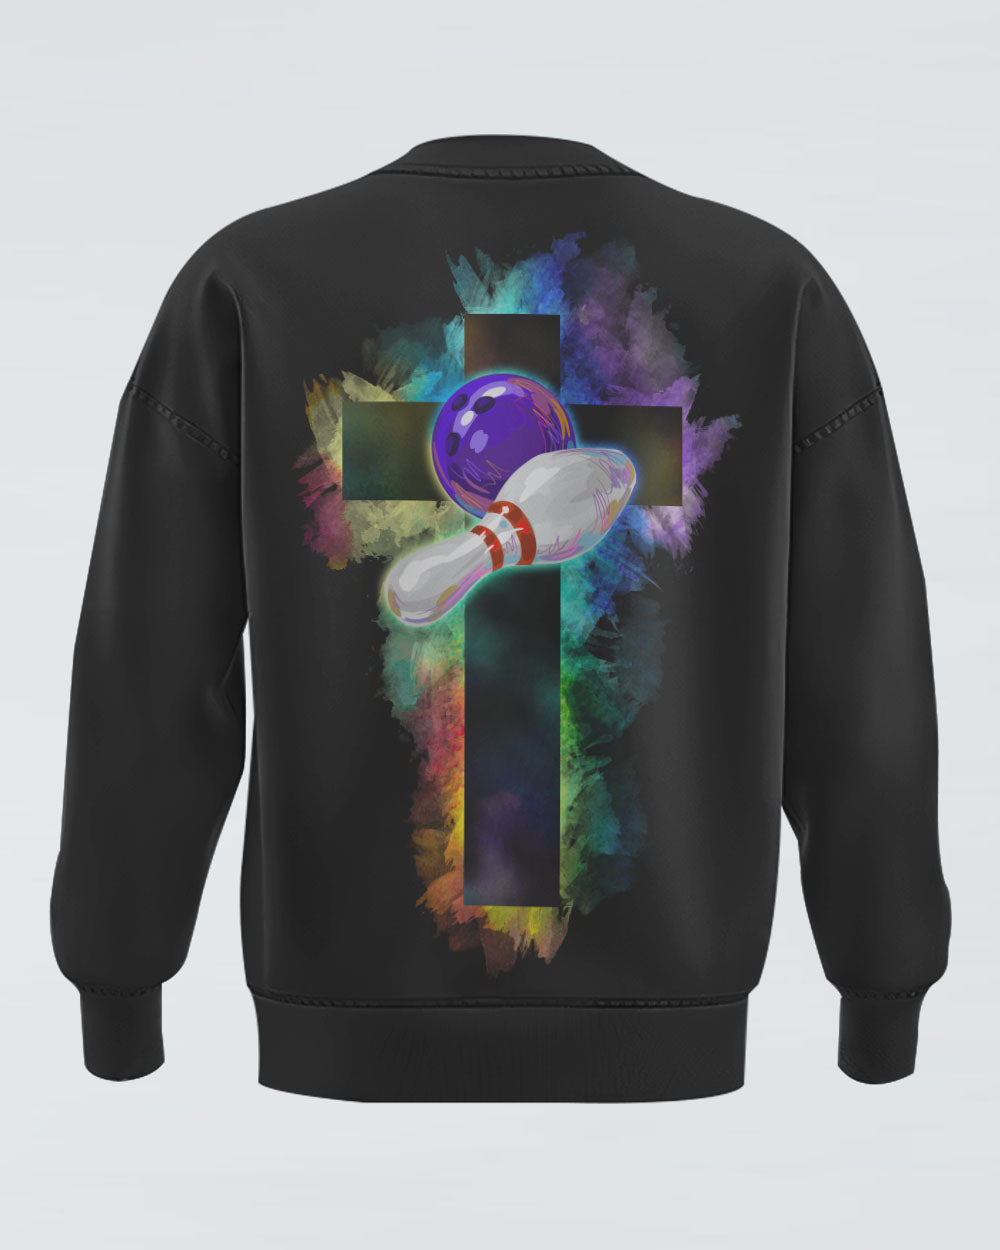 Bowling Cross Colorful Women's Christian Sweatshirt